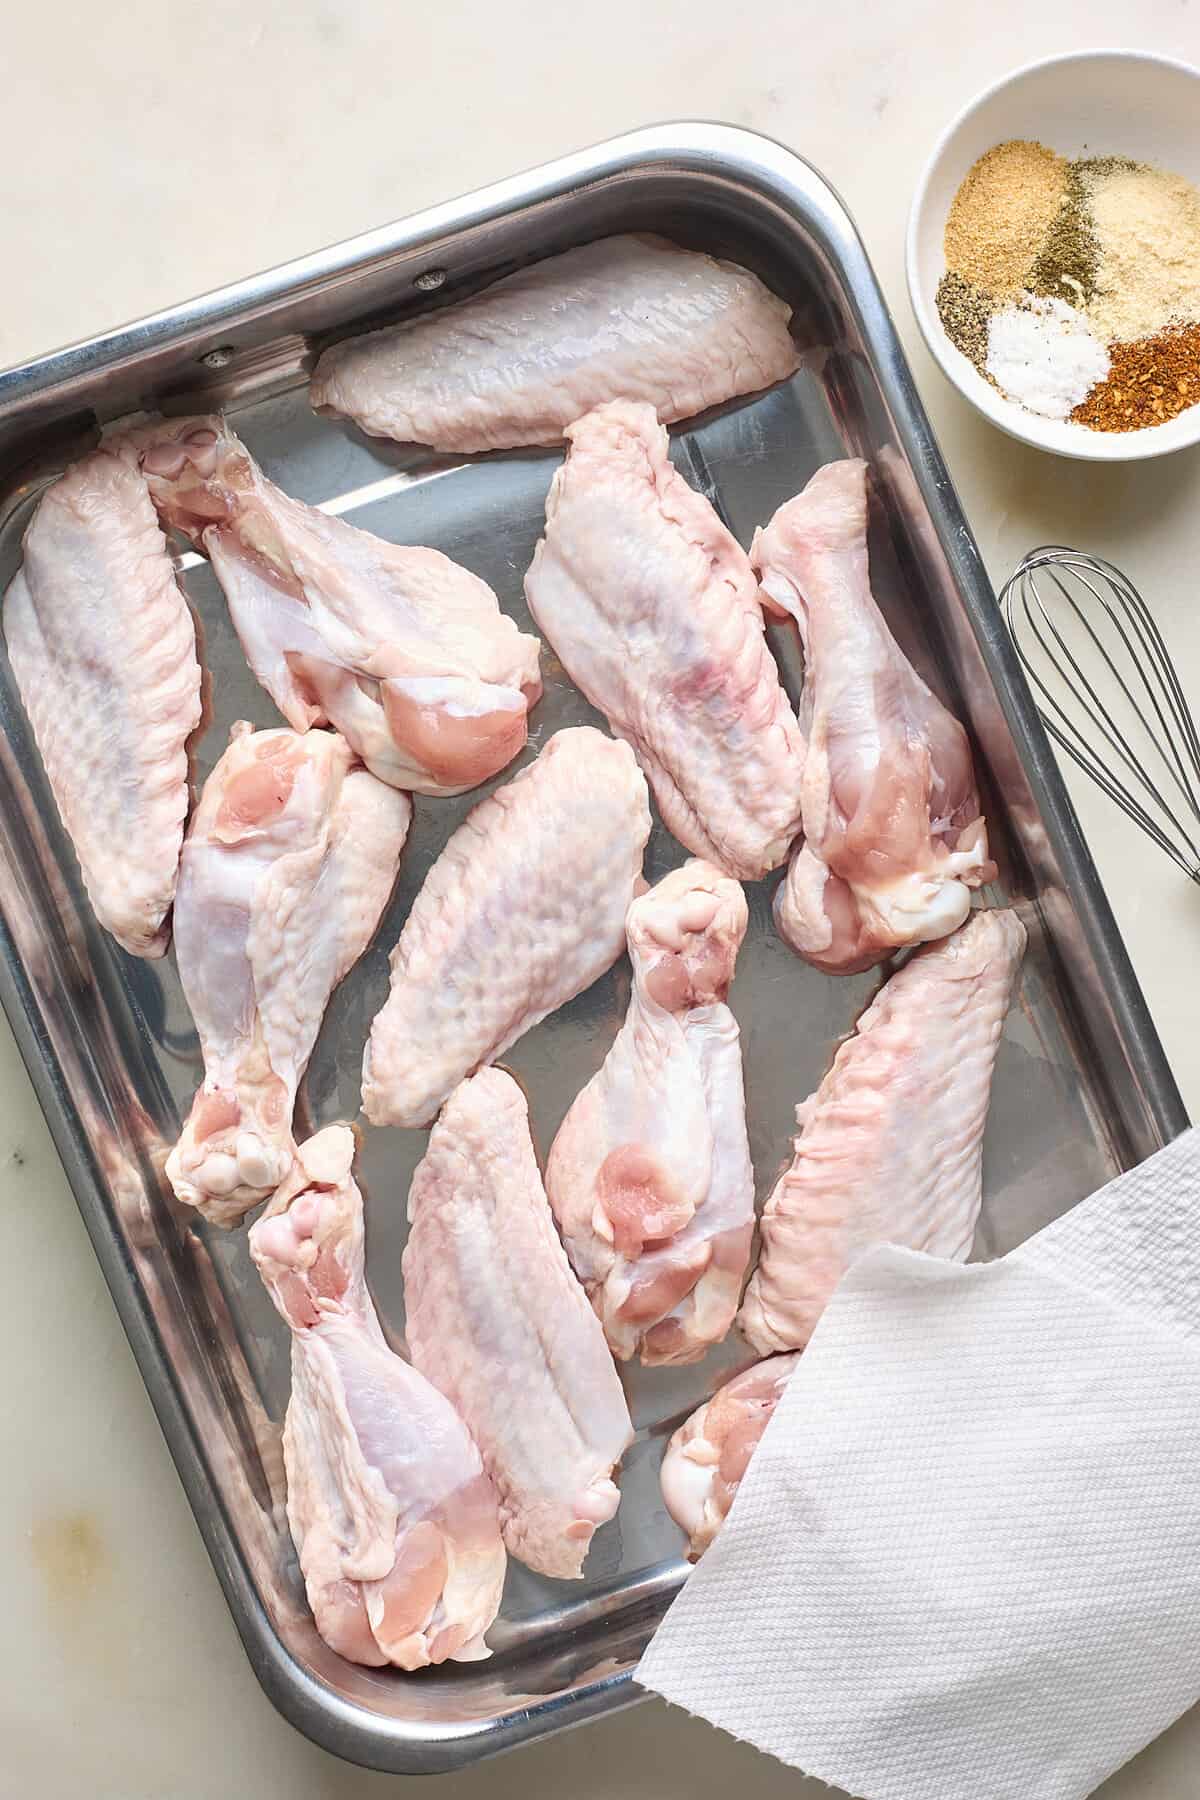 raw turkey wings on a baking sheet